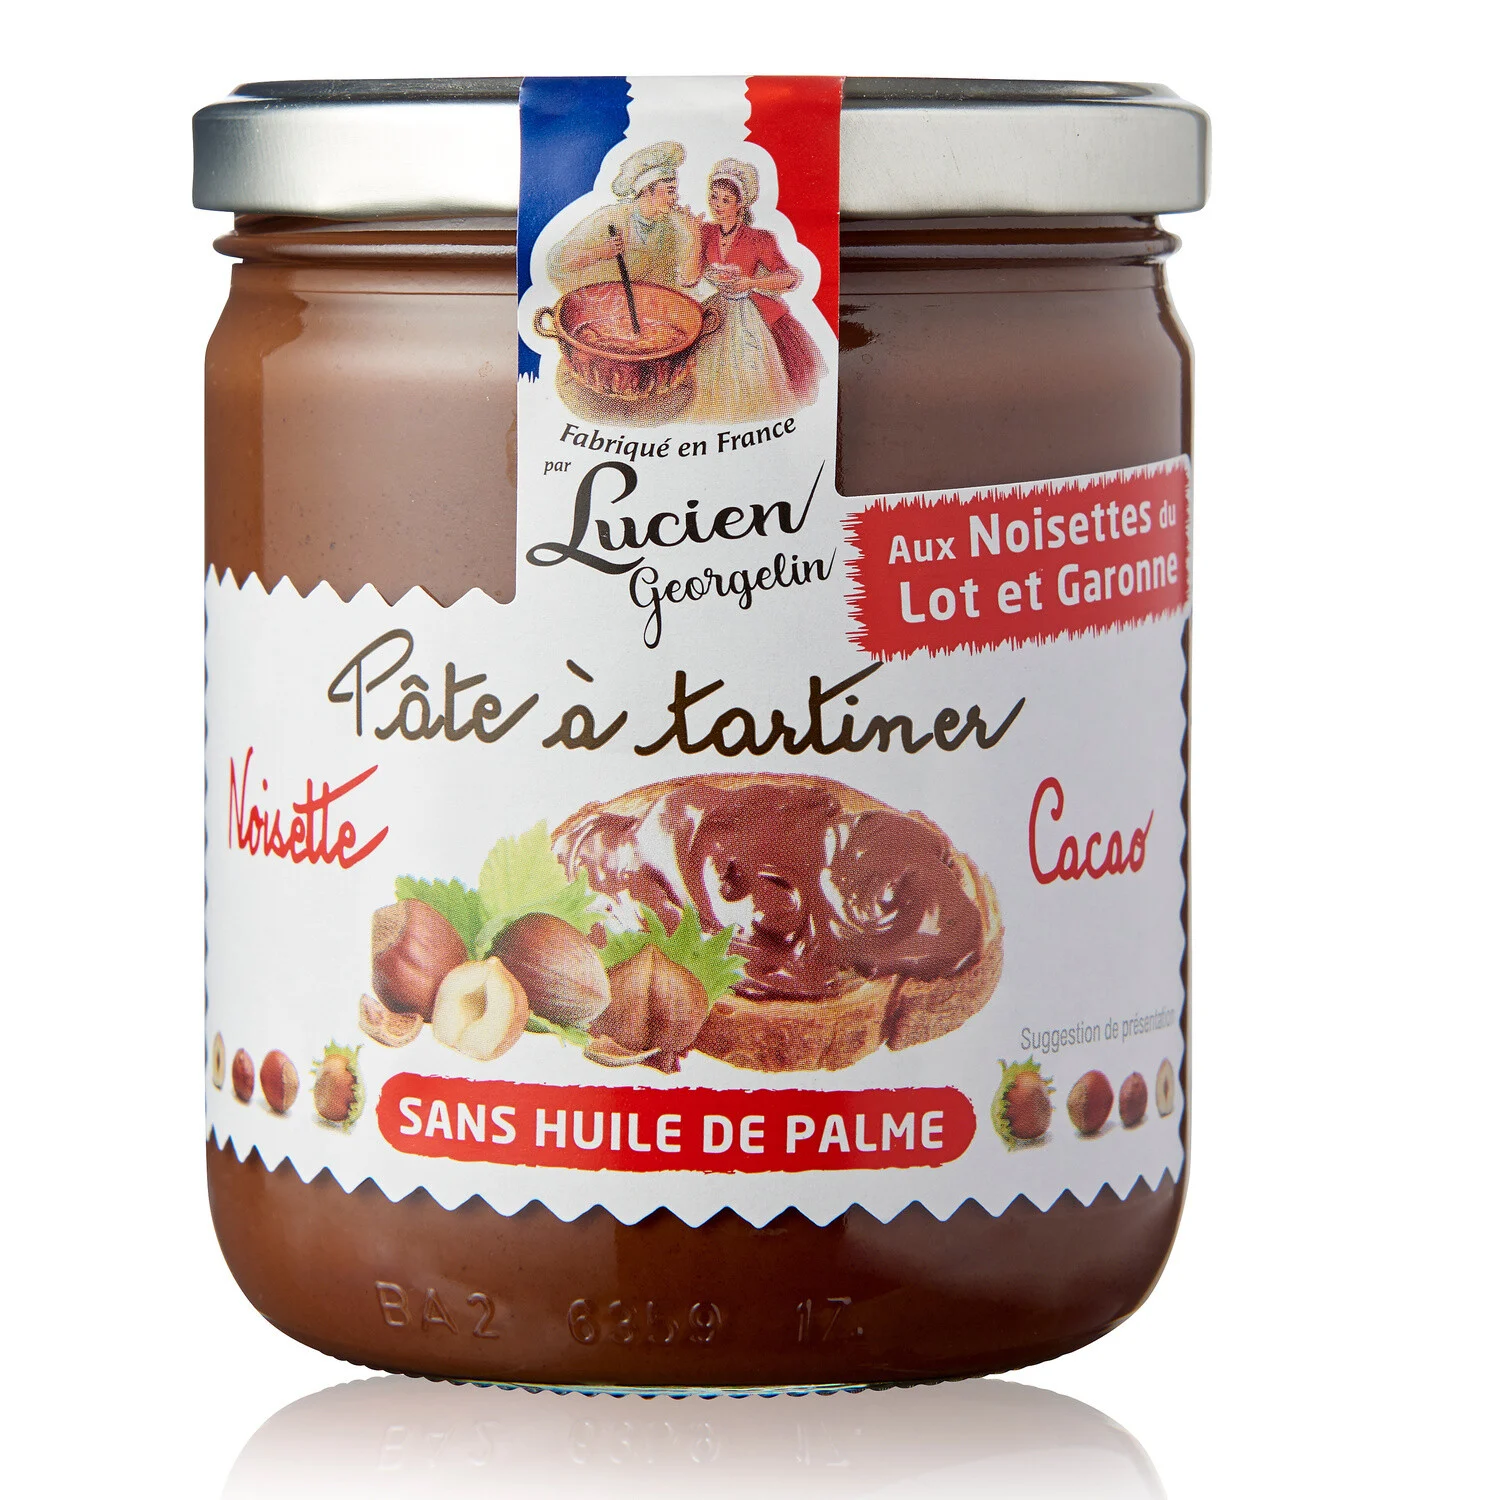 Pâte à Tartiner Noisette Du Lot Et Garonne Et Cacao
Sans Huile De Palme 400g - LUCIEN GEORGELIN